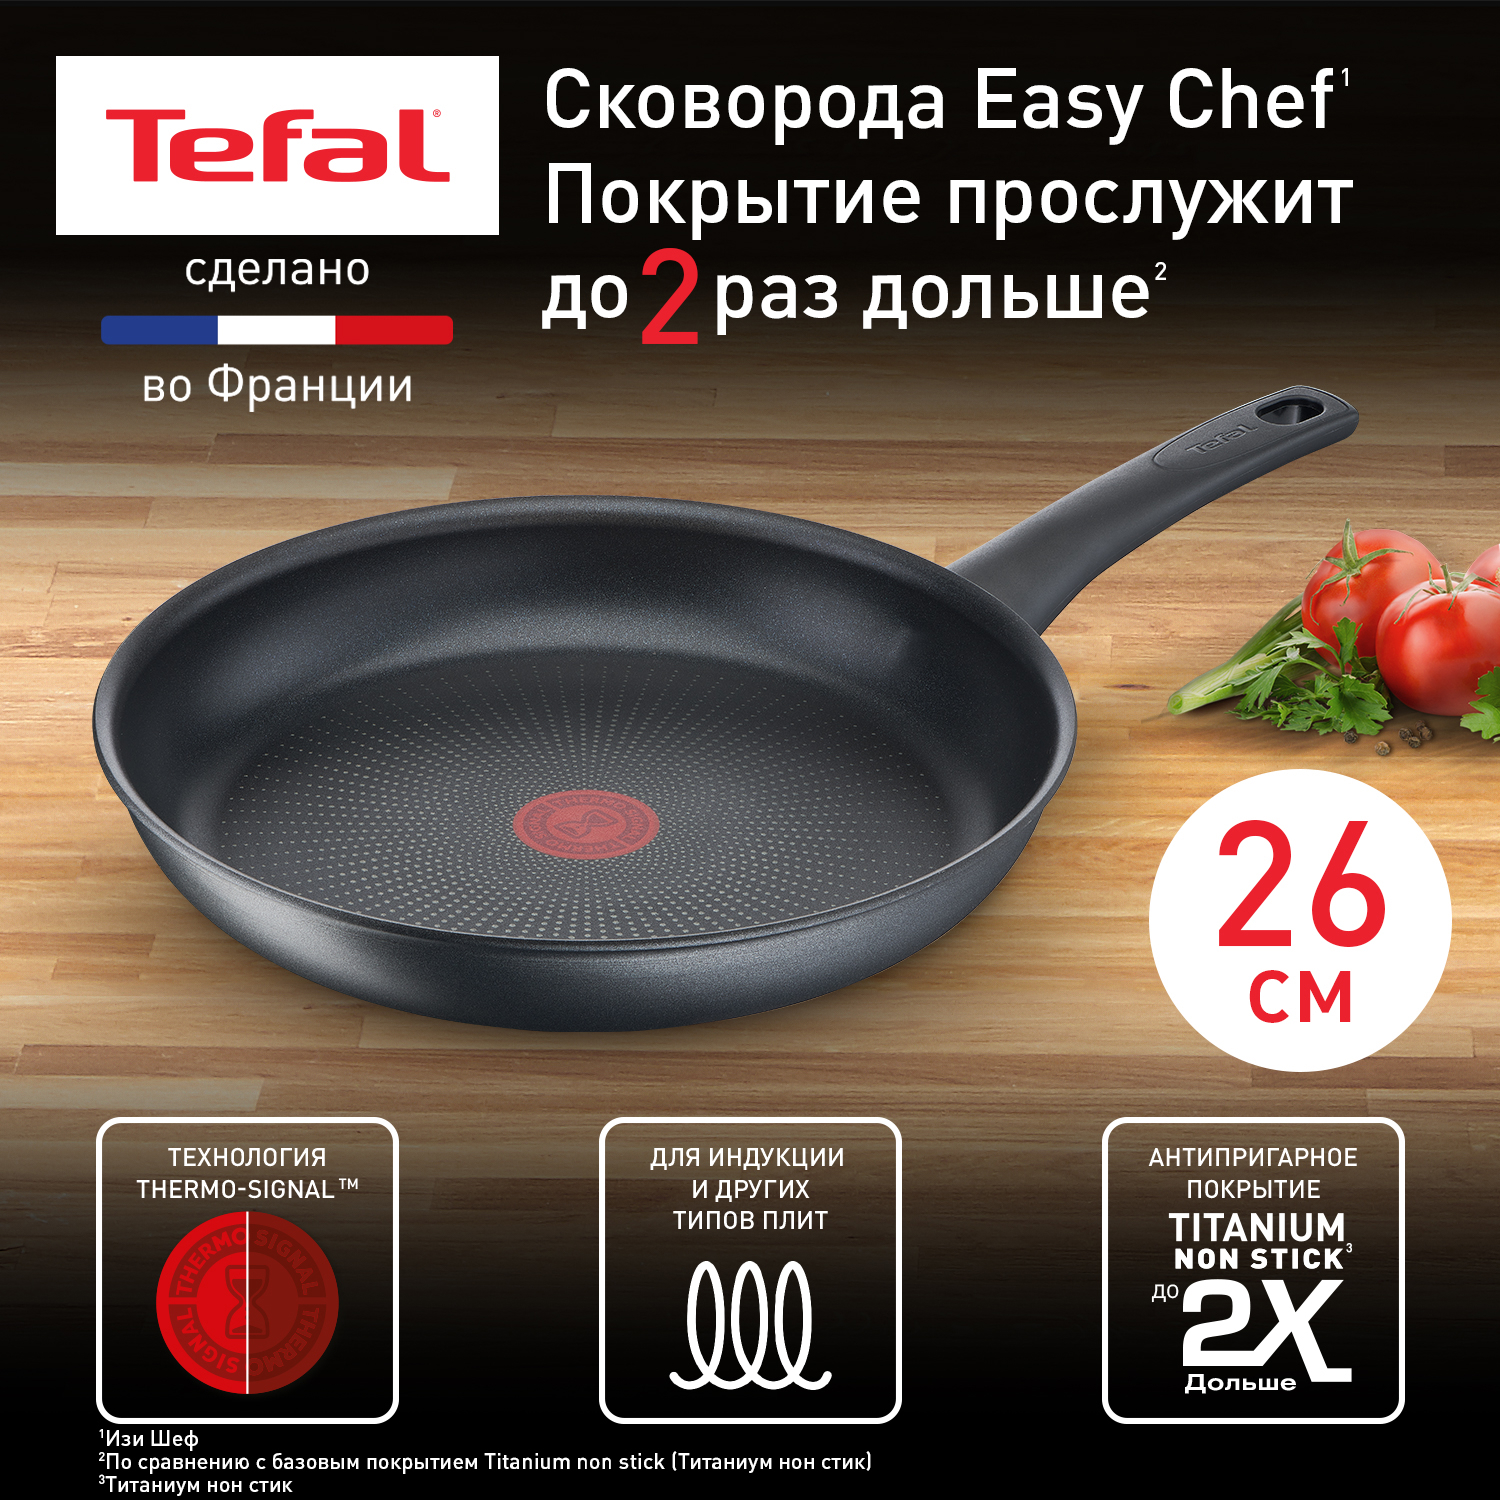 Сковорода универсальная Tefal Easy Chef 26 см черный G2700572